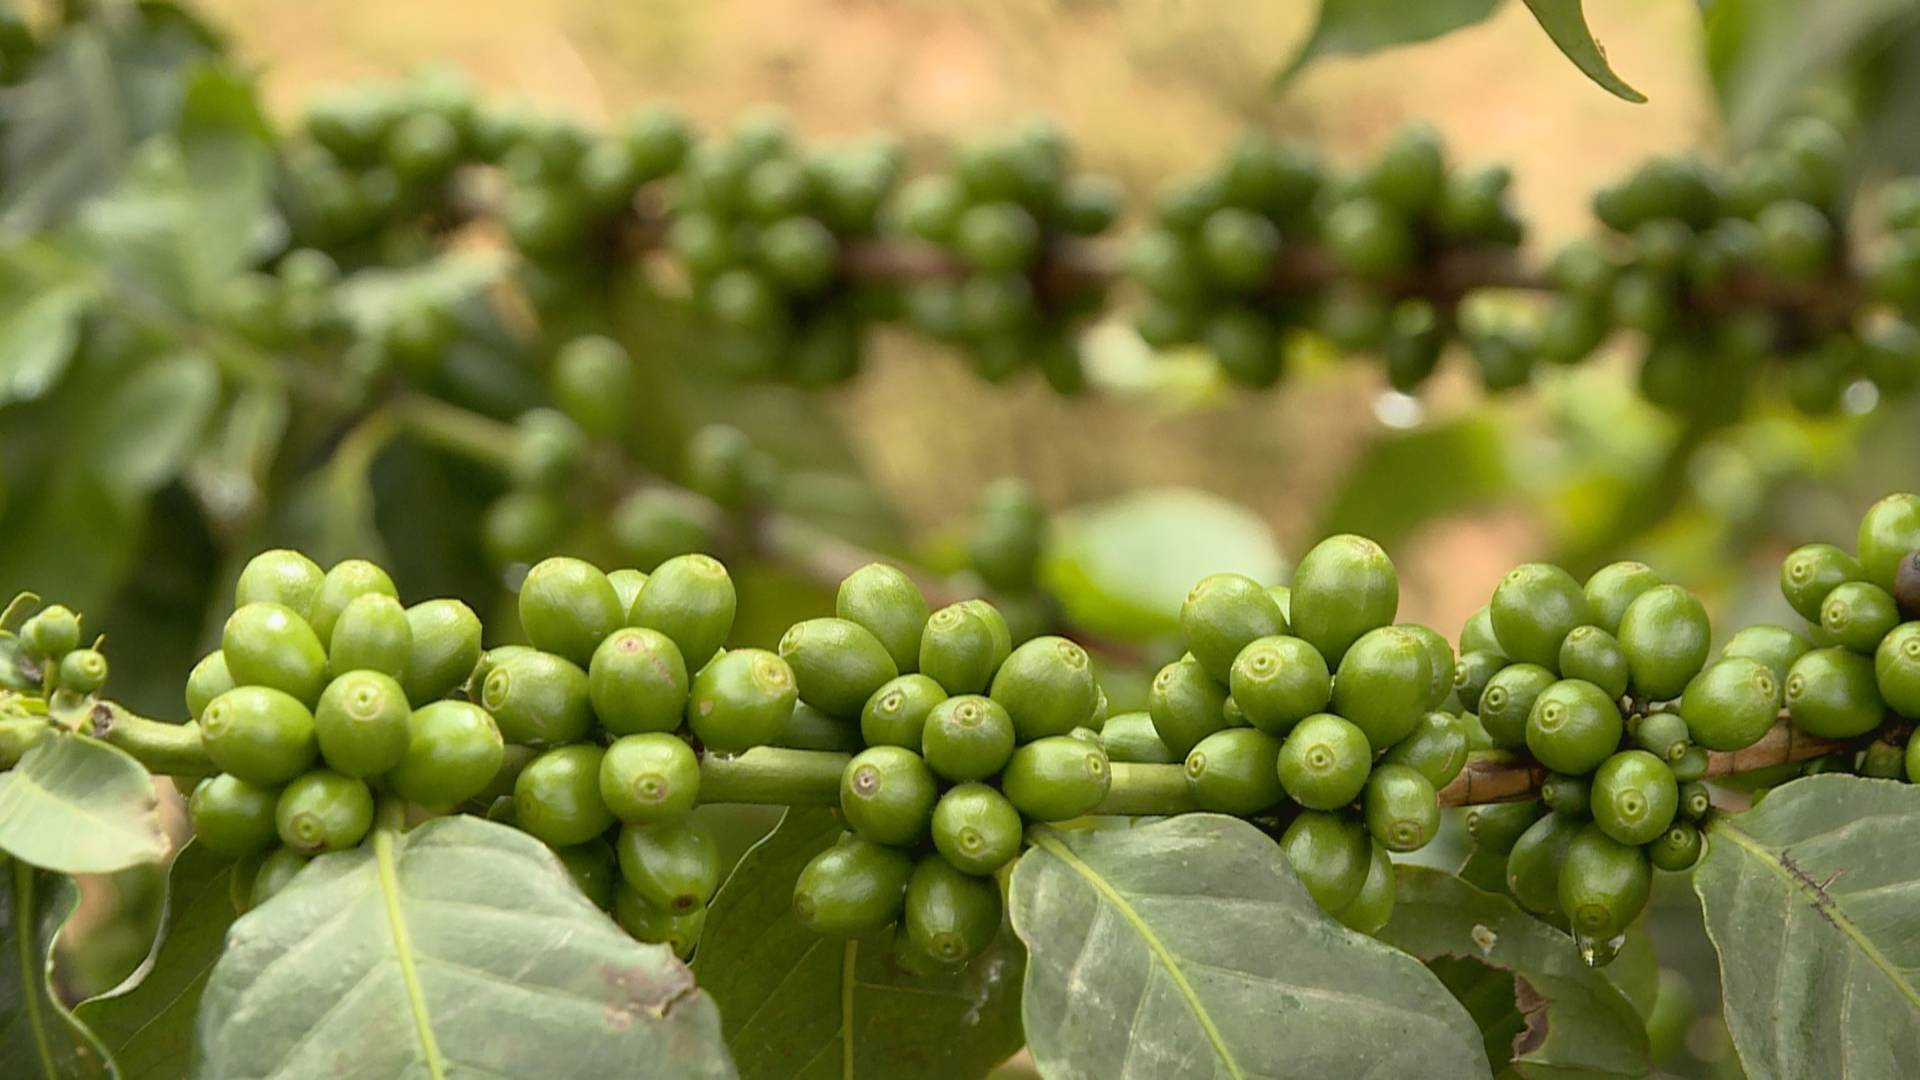 保山隆阳:重塑咖啡产业 打造世界一流绿色食品牌